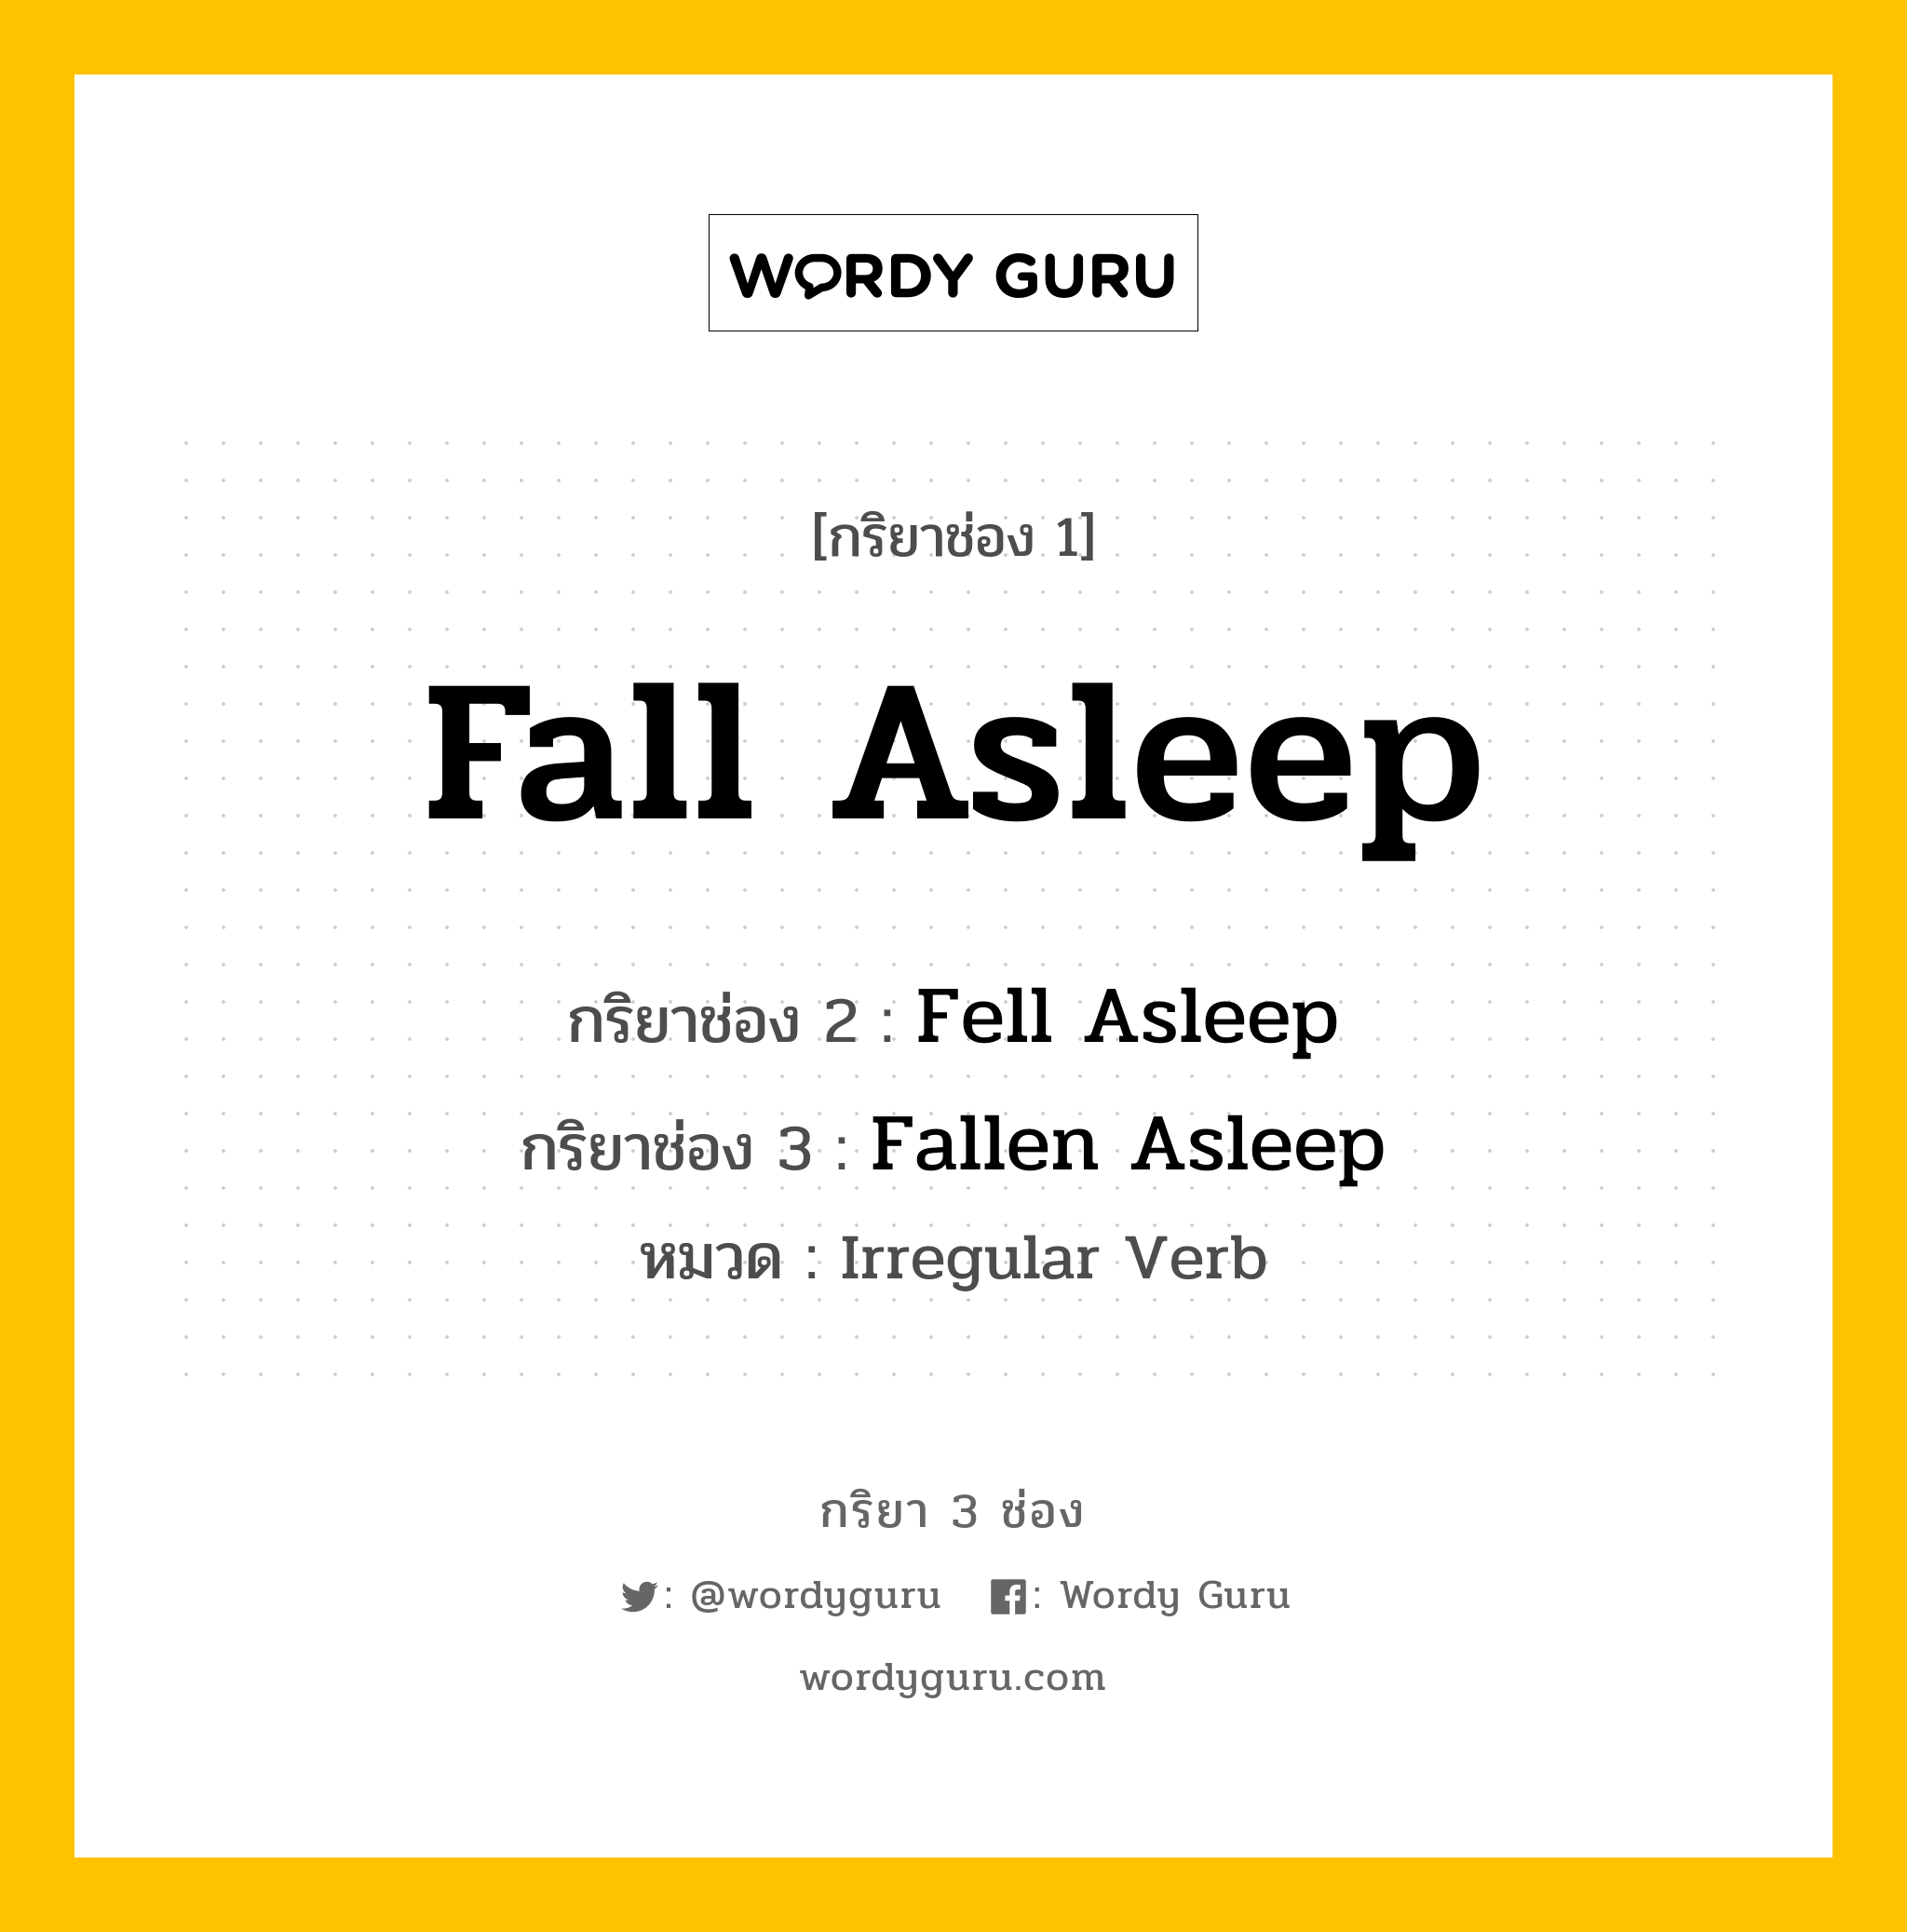 กริยา 3 ช่อง: Fall Asleep ช่อง 2 Fall Asleep ช่อง 3 คืออะไร, กริยาช่อง 1 Fall Asleep กริยาช่อง 2 Fell Asleep กริยาช่อง 3 Fallen Asleep หมวด Irregular Verb หมวด Irregular Verb